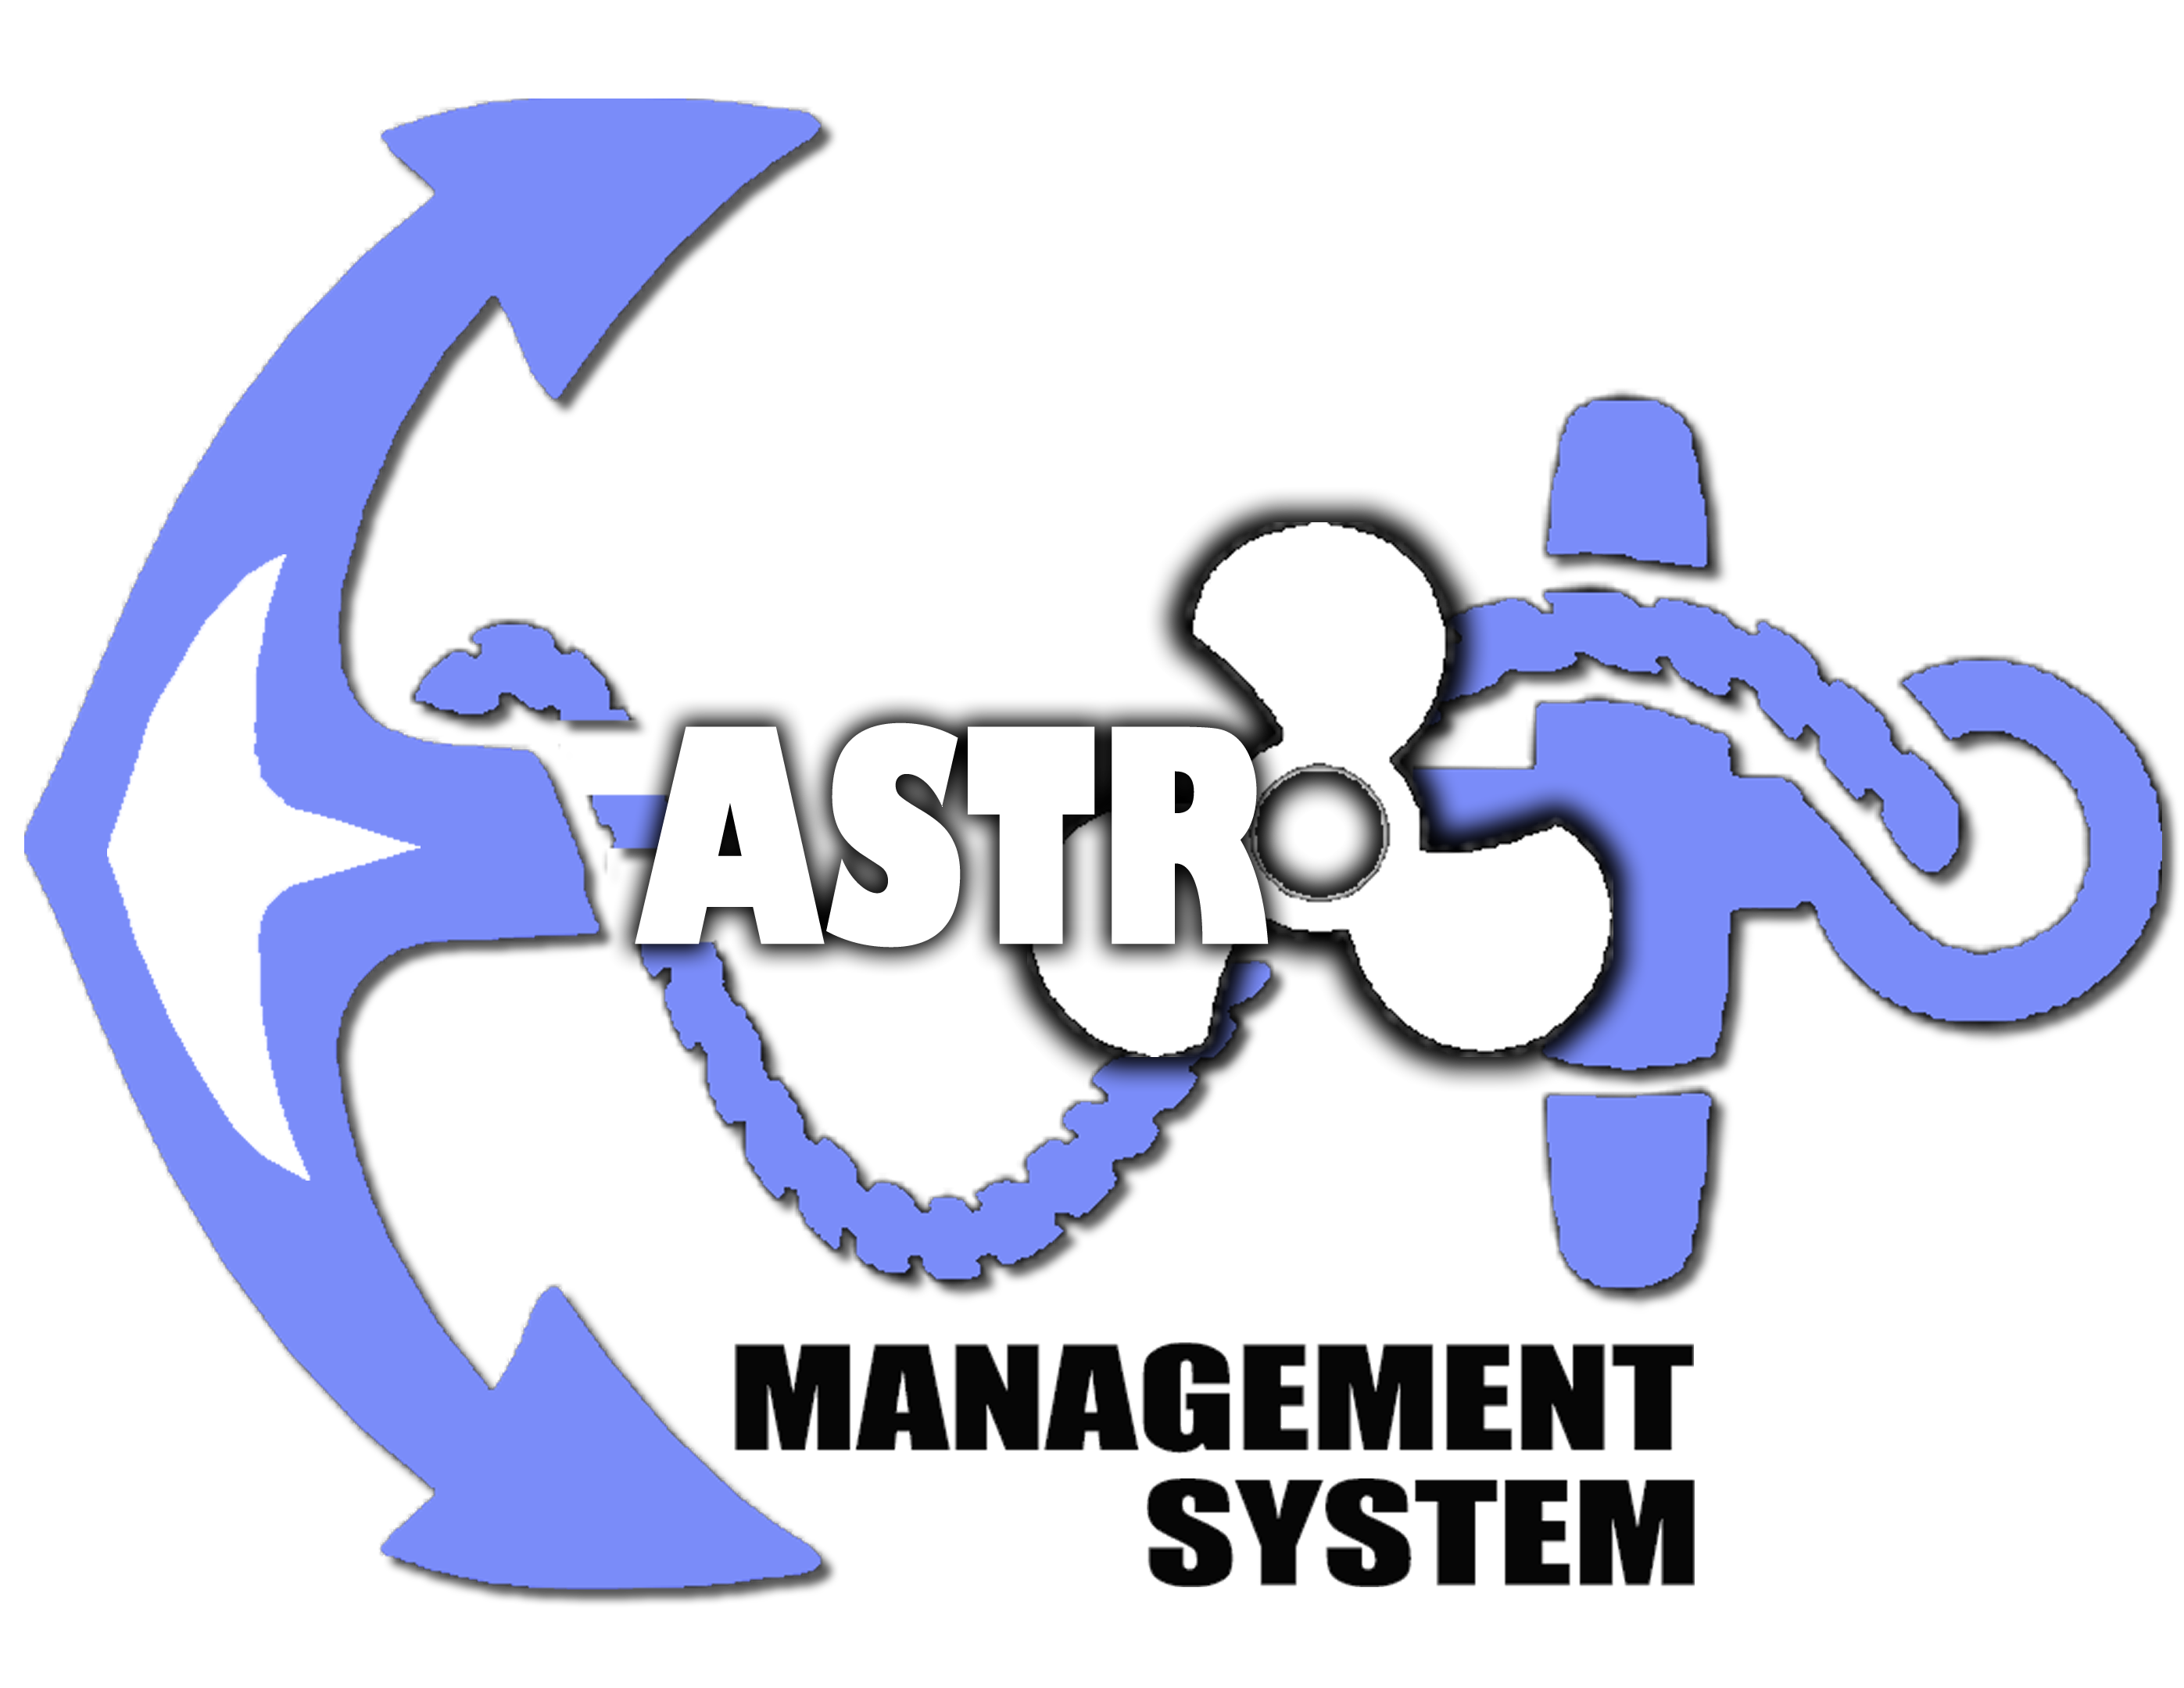 Astro dealer portal login